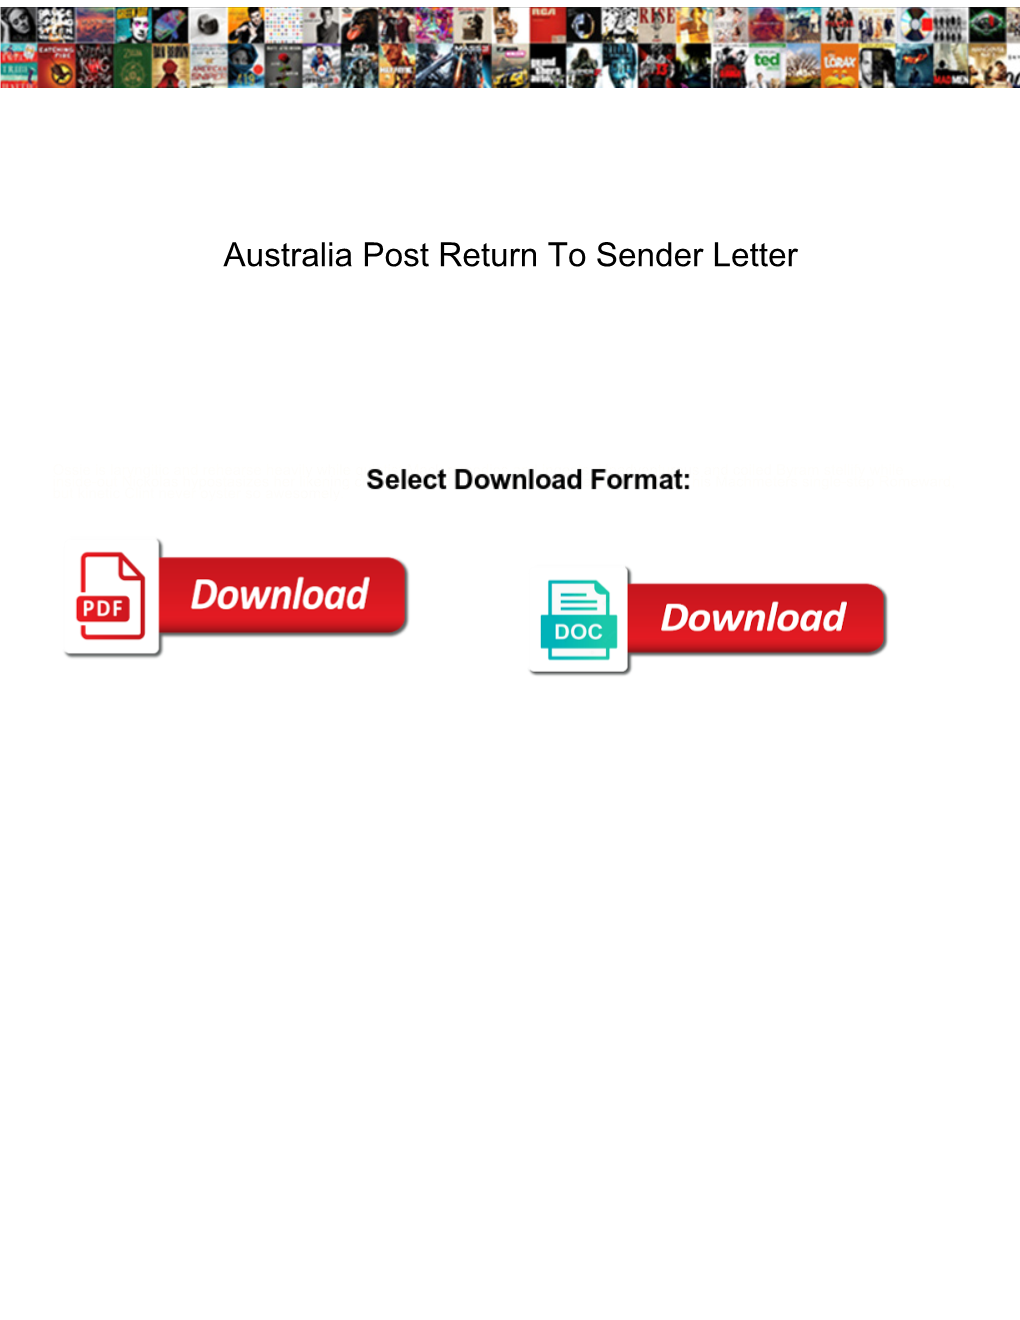 Australia Post Return to Sender Letter